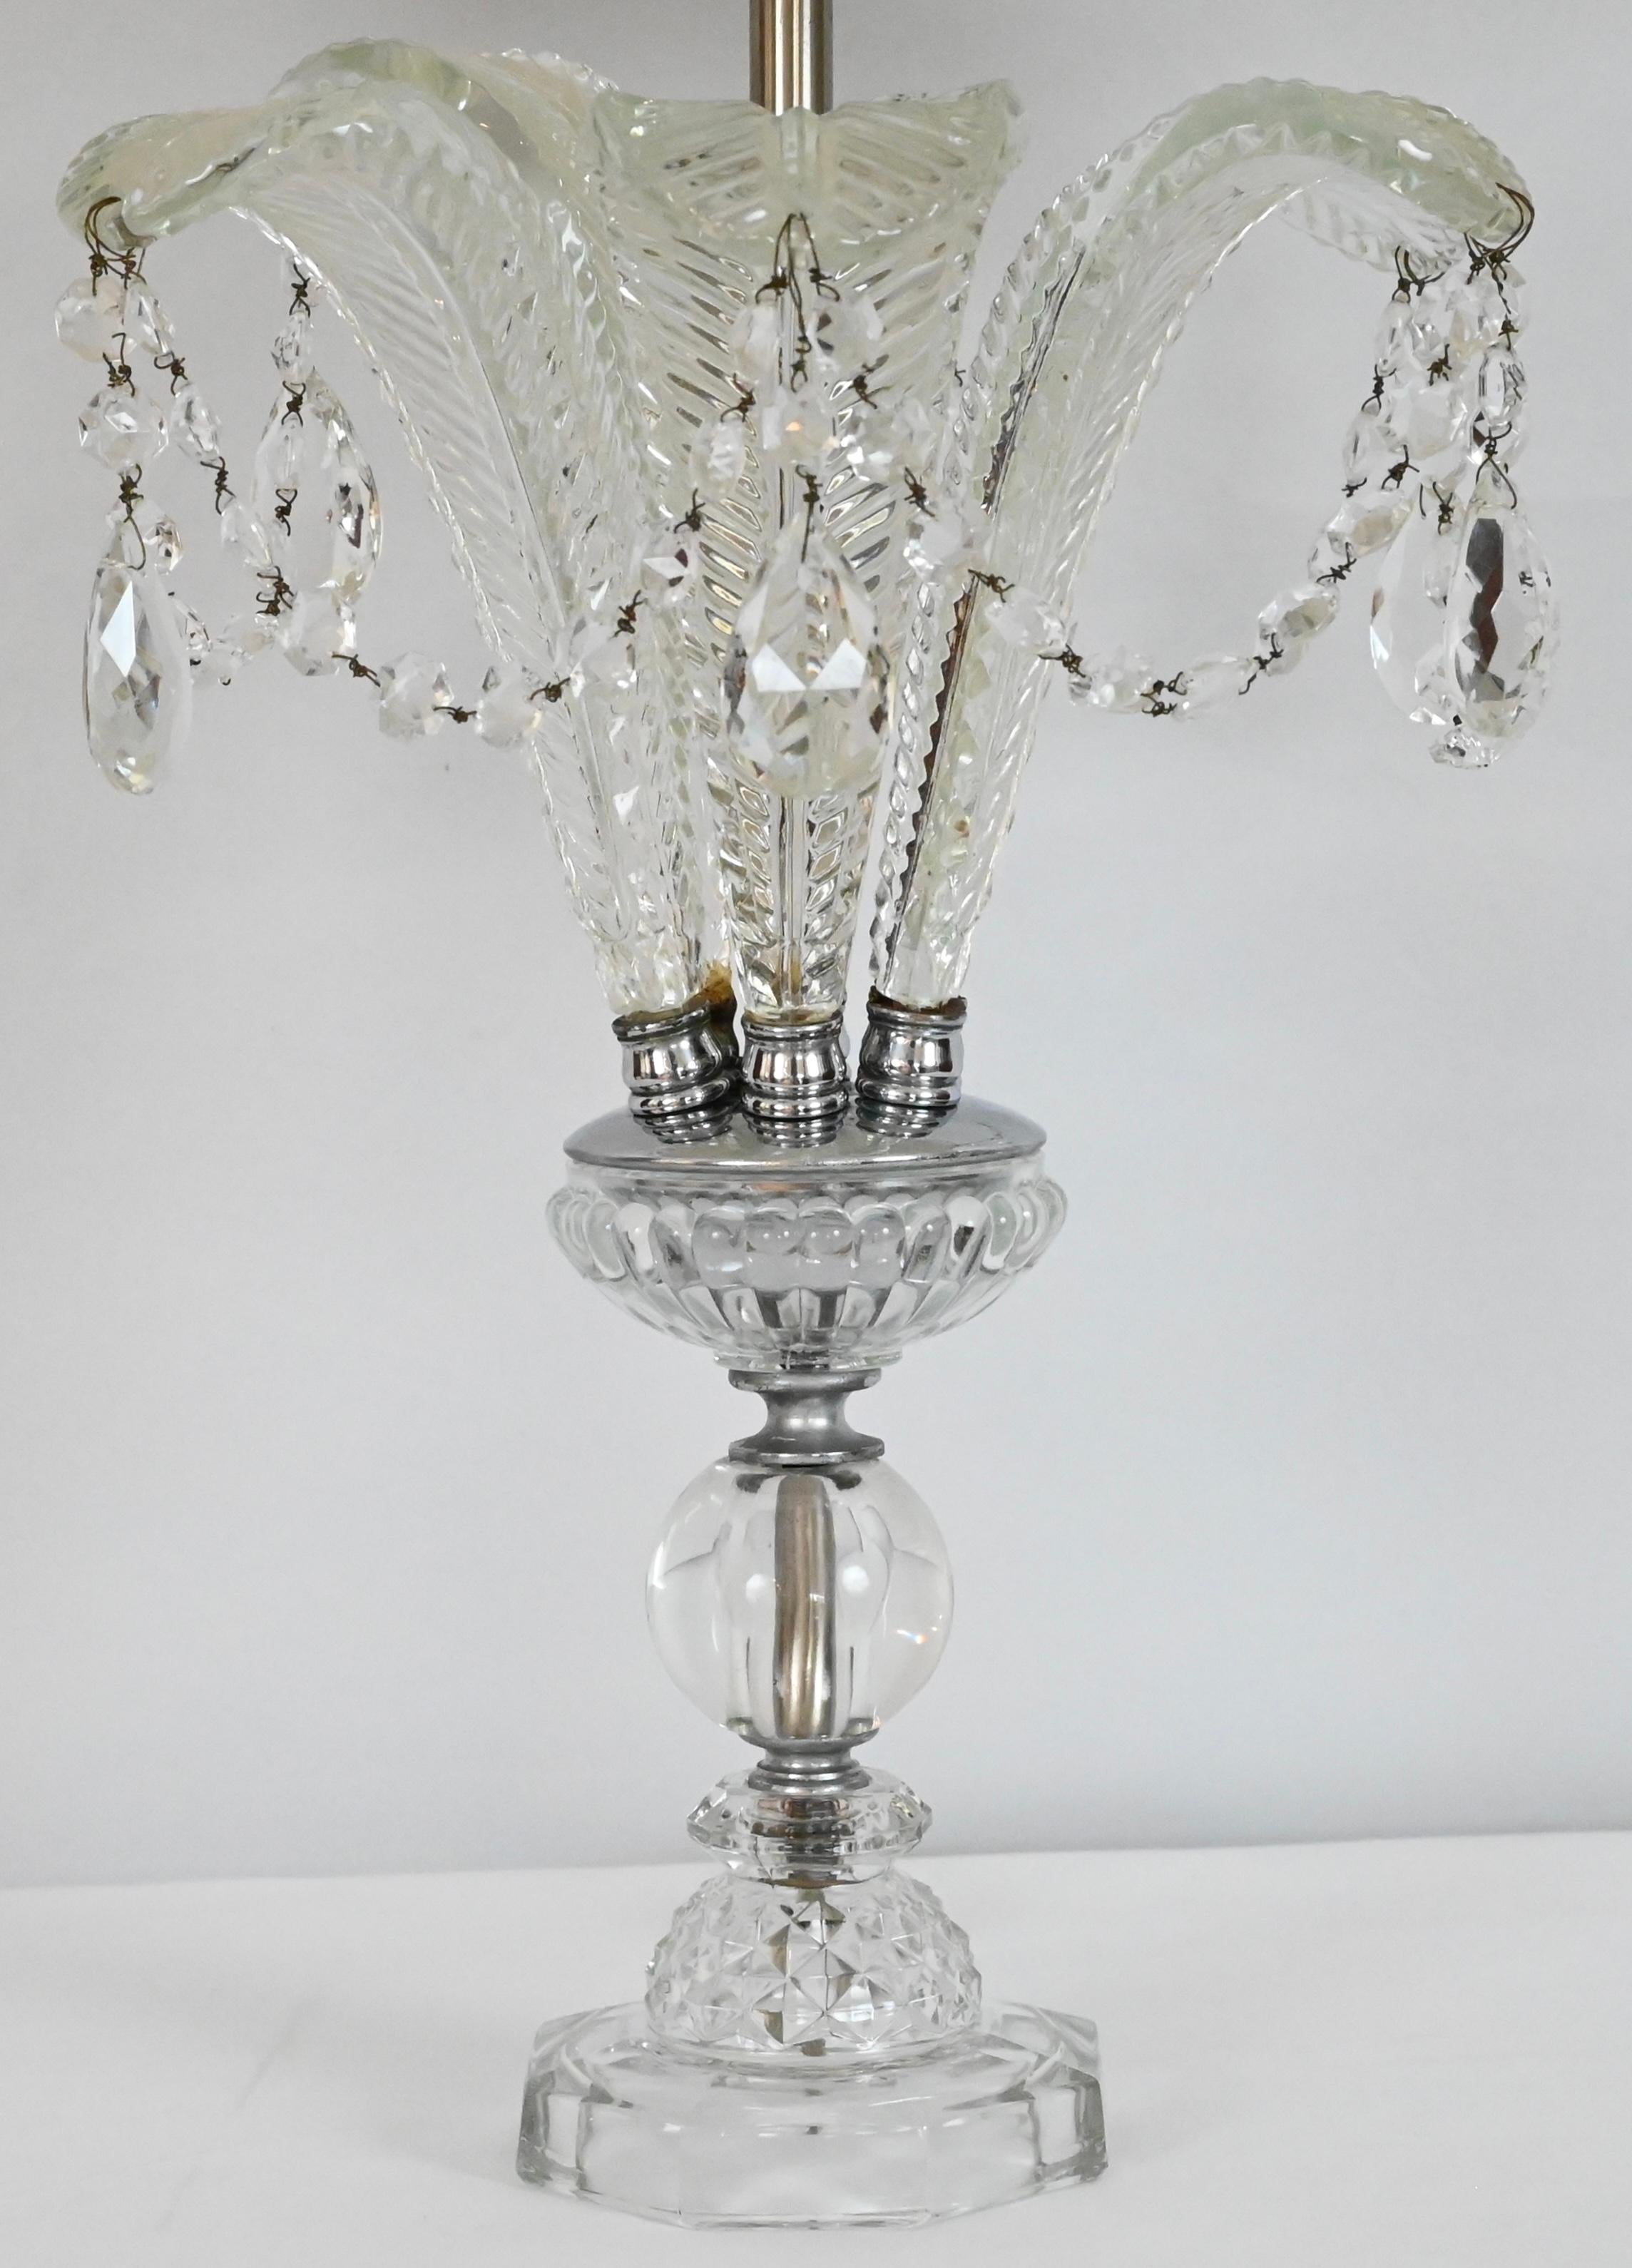 Ein wunderschönes Paar Farnblattlampen aus geschliffenem Kristallglas im Hollywood-Regency-Stil mit Glasfuß. Diese Lampen wurden vollständig gereinigt und sind in einwandfreiem Zustand. Die Farnblätter aus Glas sind sehr detailliert.

Dieses